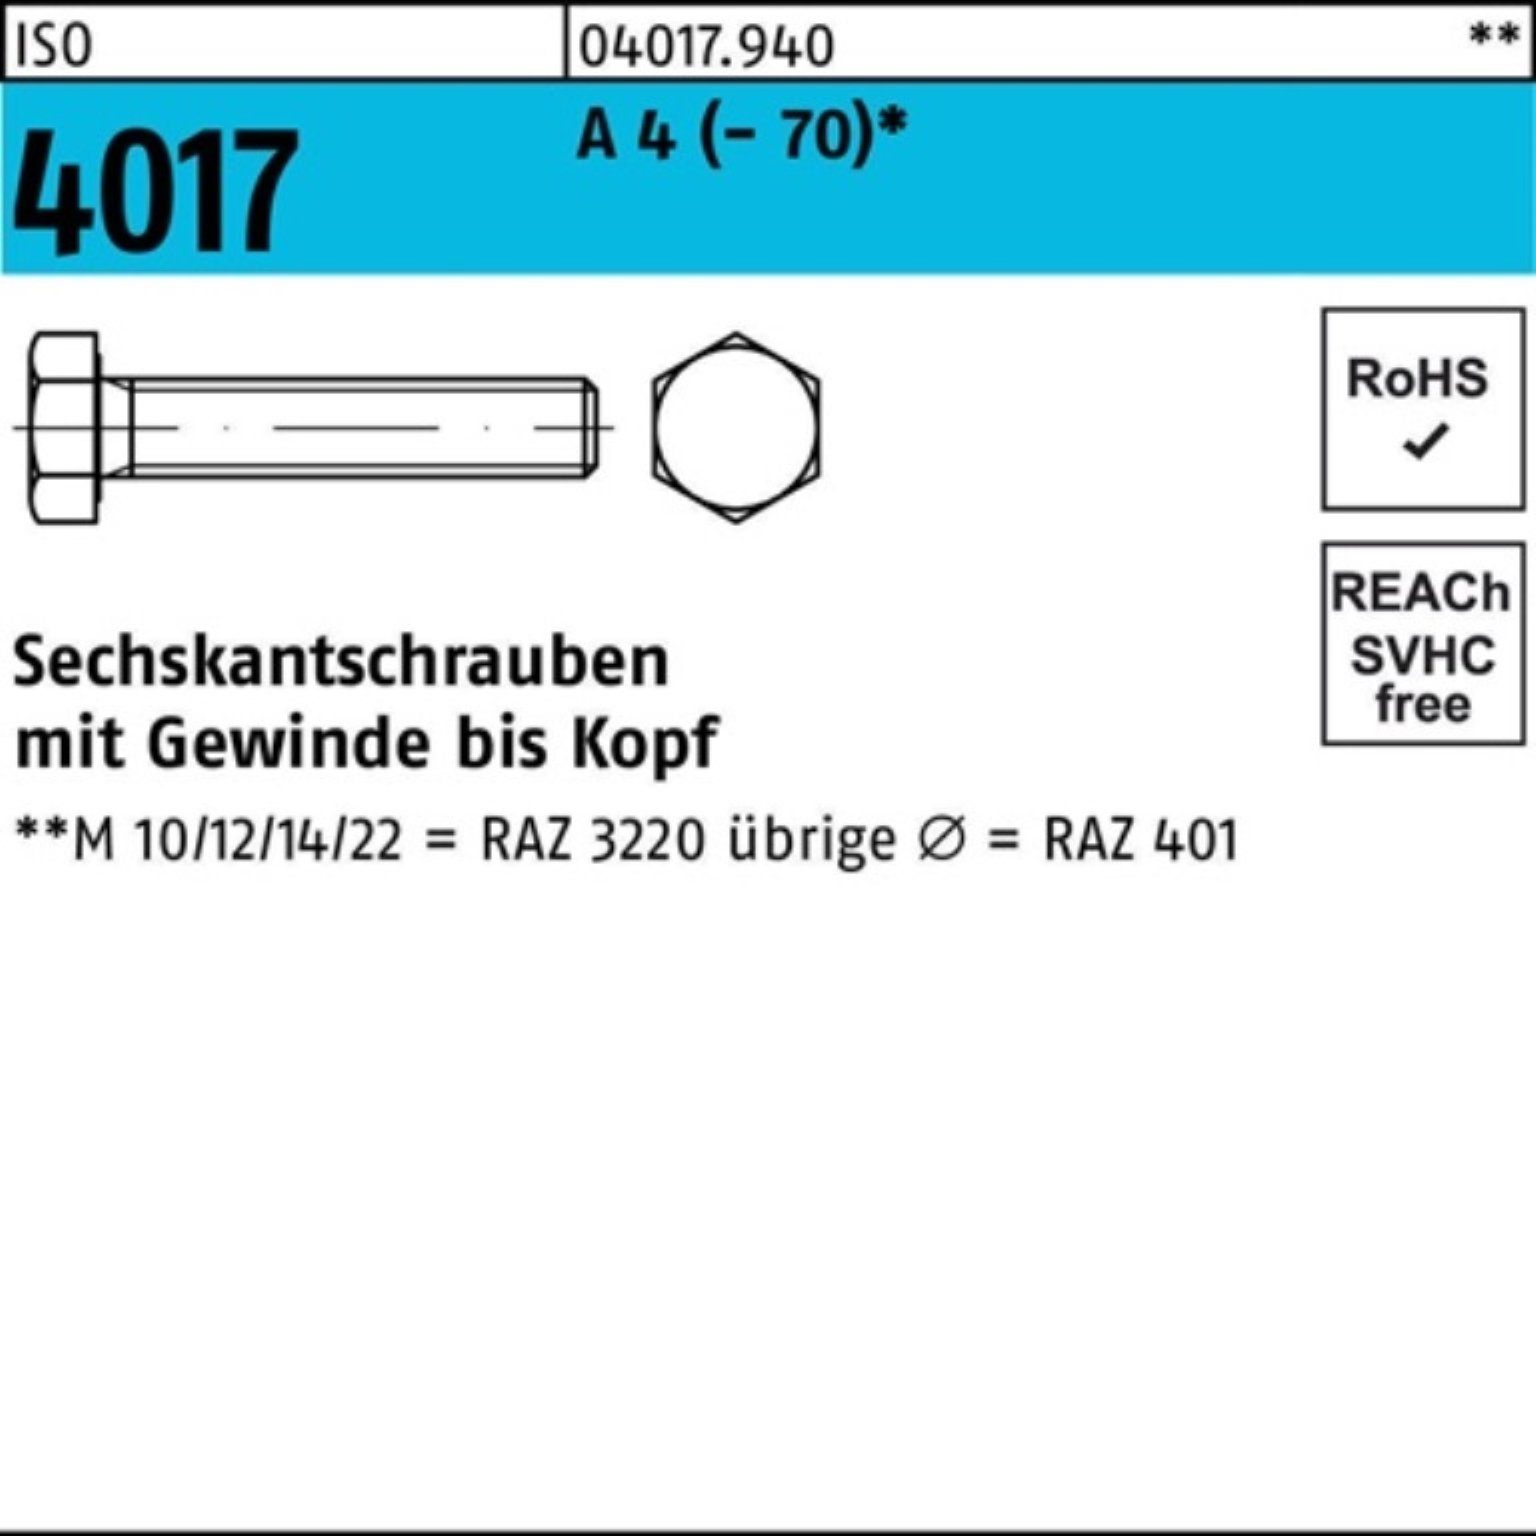 ISO 4017 VG M6x A Stück 500 12 Bufab 4 (70) Sechskantschraube Pack Sechskantschraube 500er